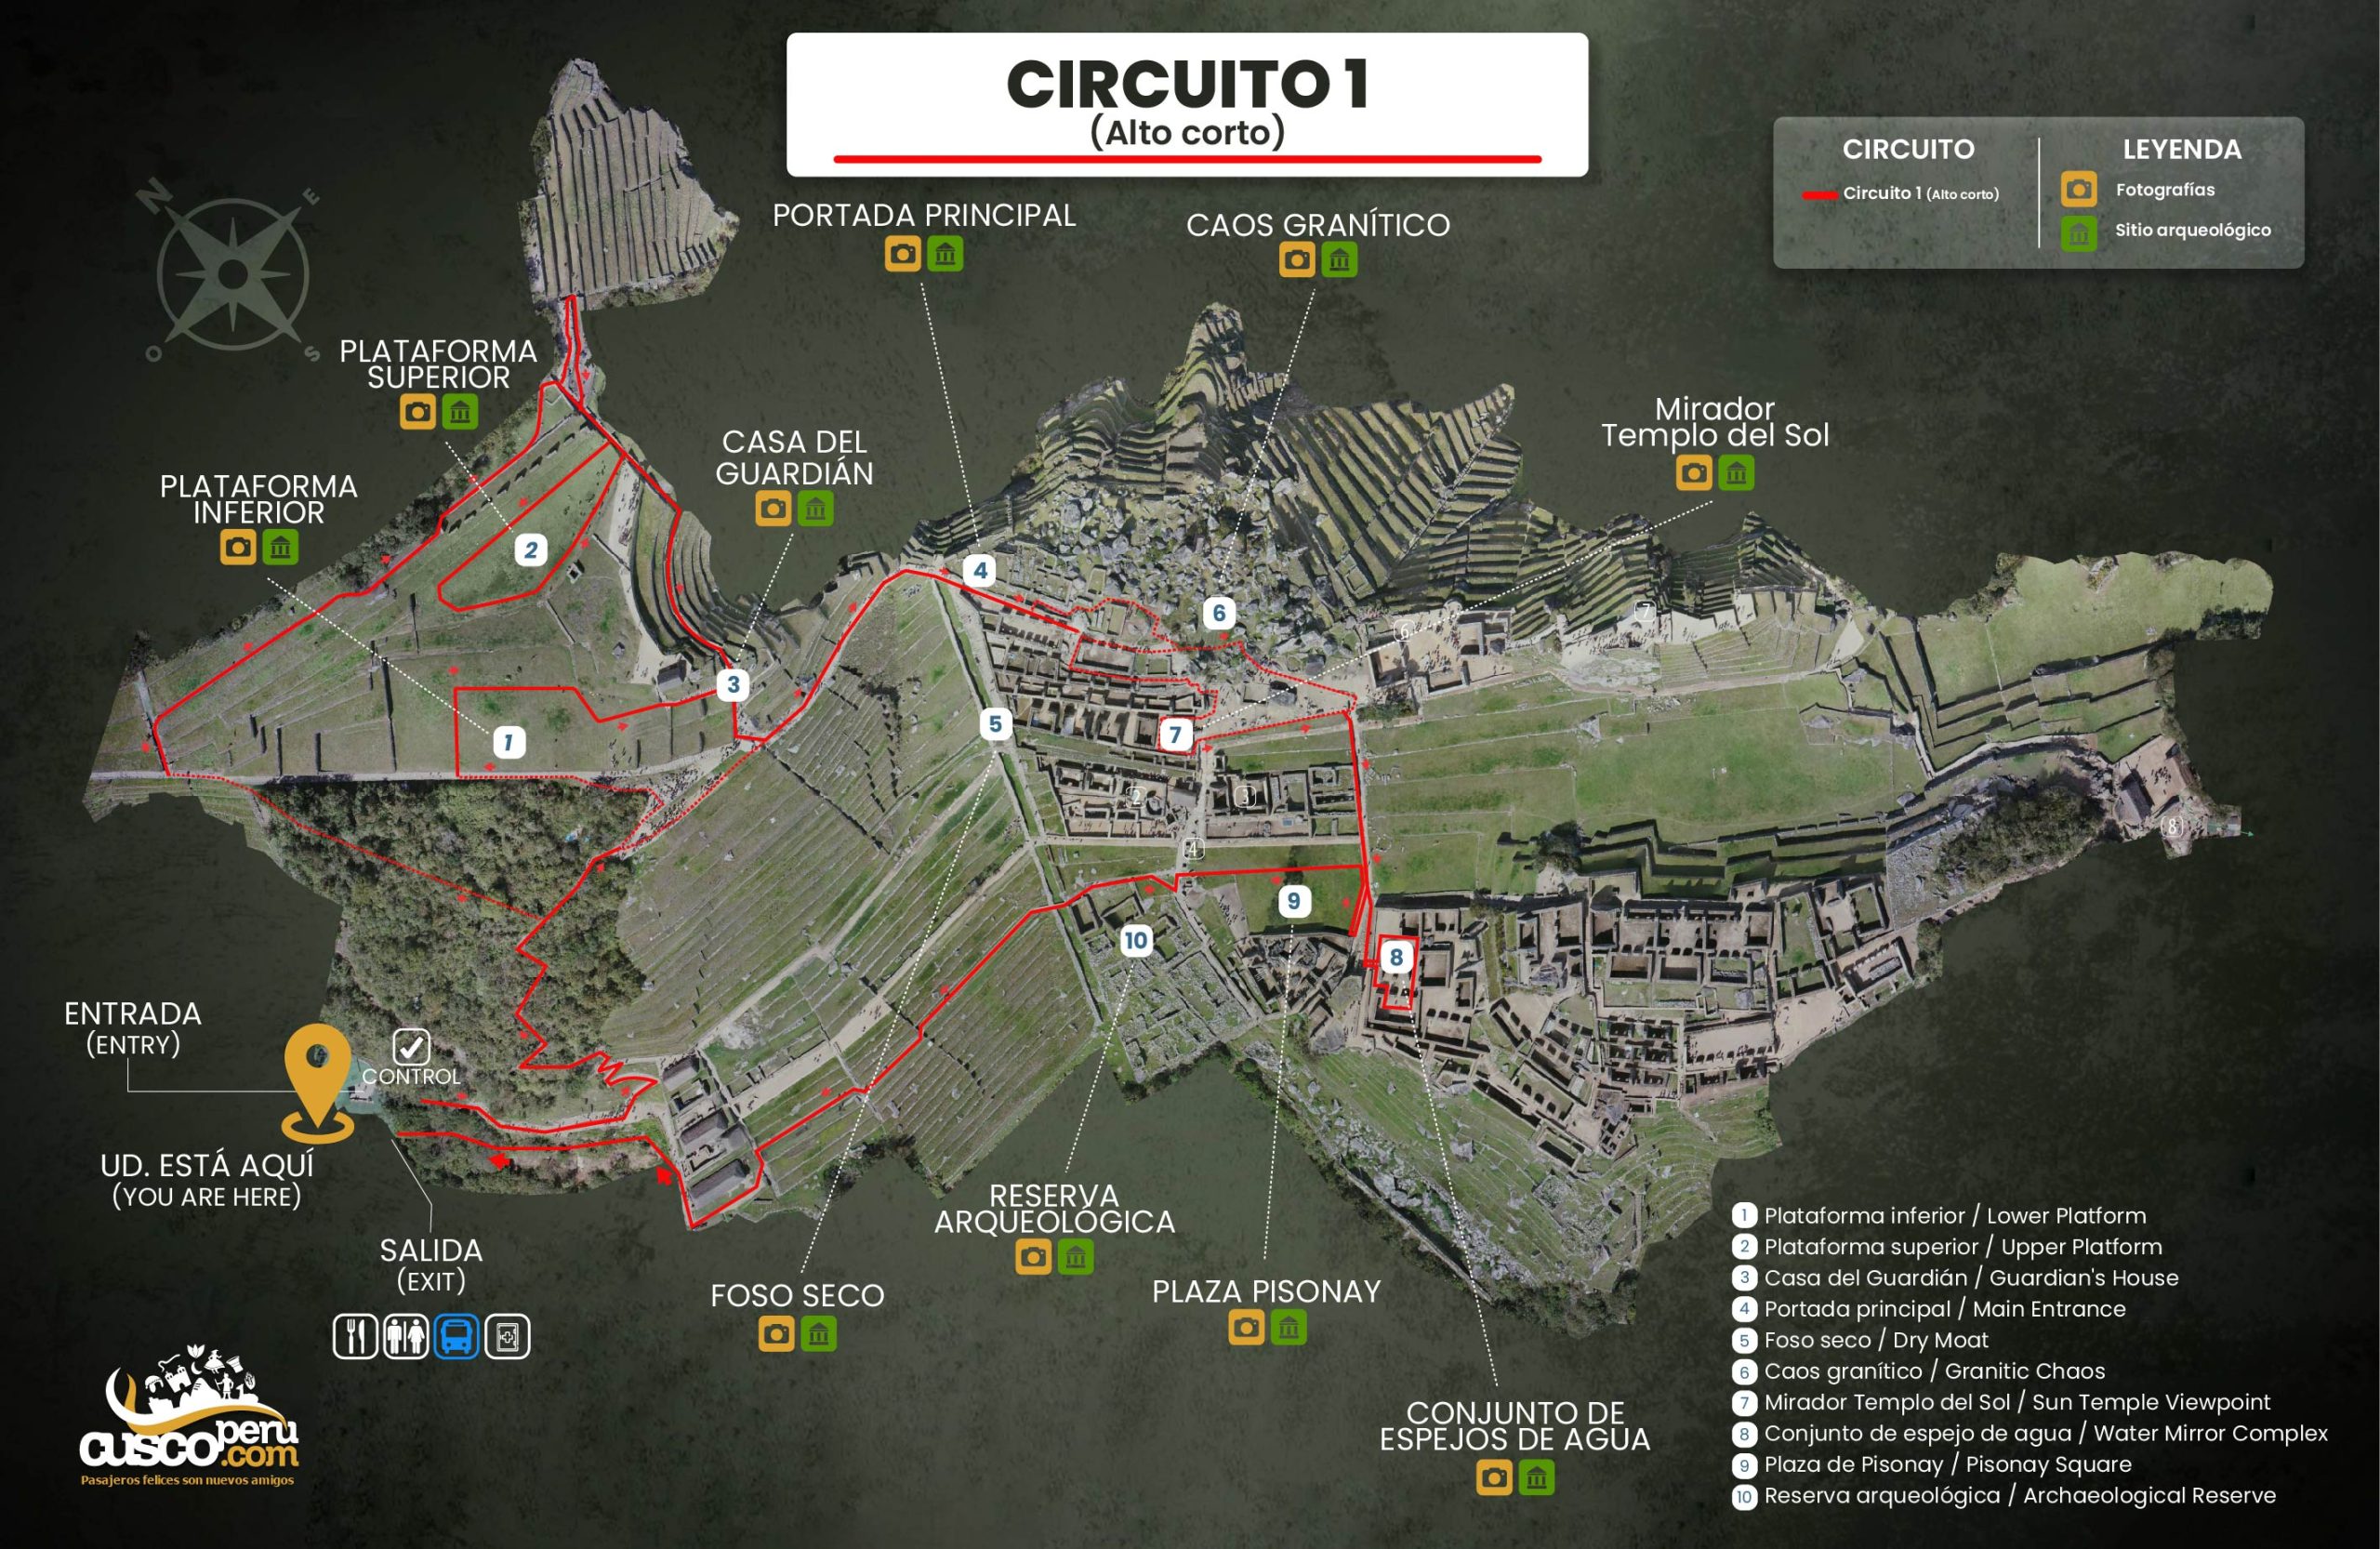 Mapa del circuito 1 en Machu Picchu. Fuente: CuscoPeru.com